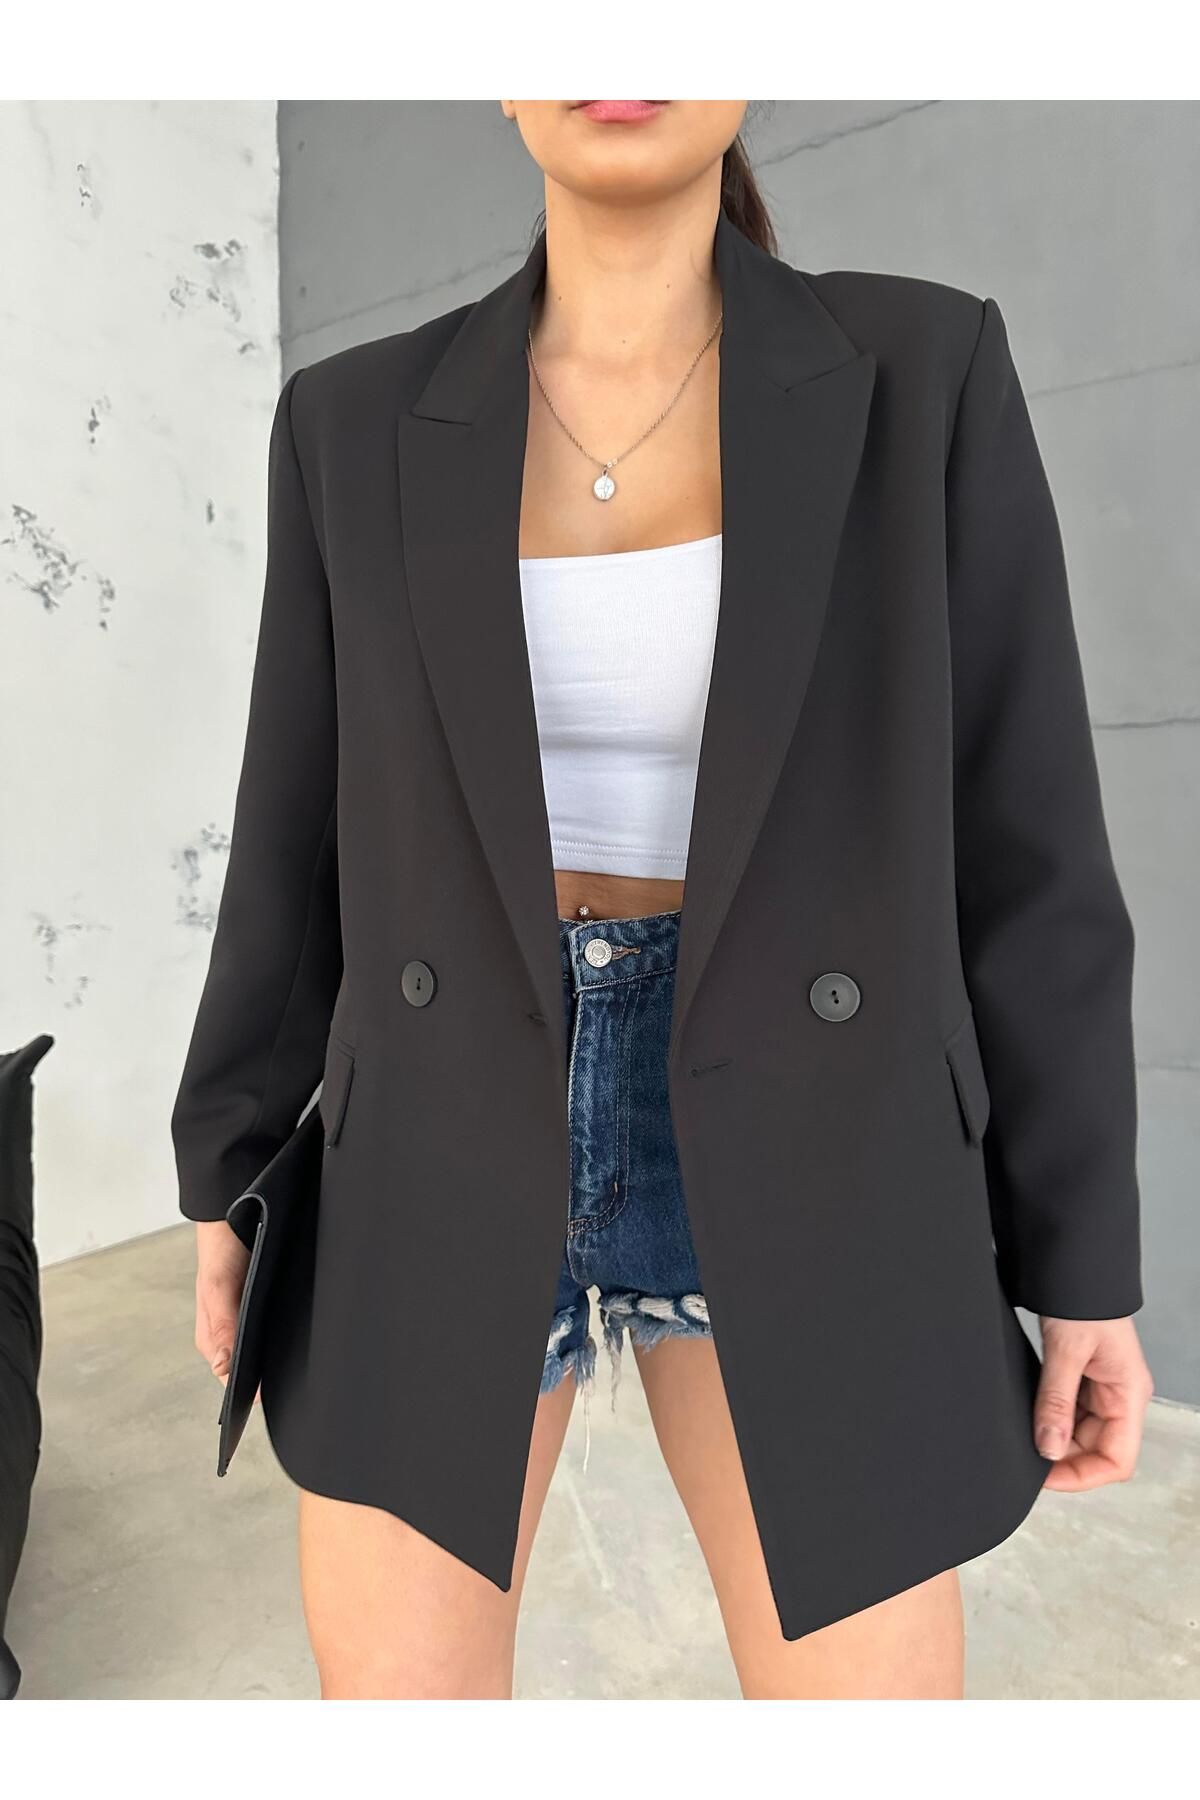 Maldia Shop Kadın Double Kumaş Astarlı Siyah Blazer Ceket